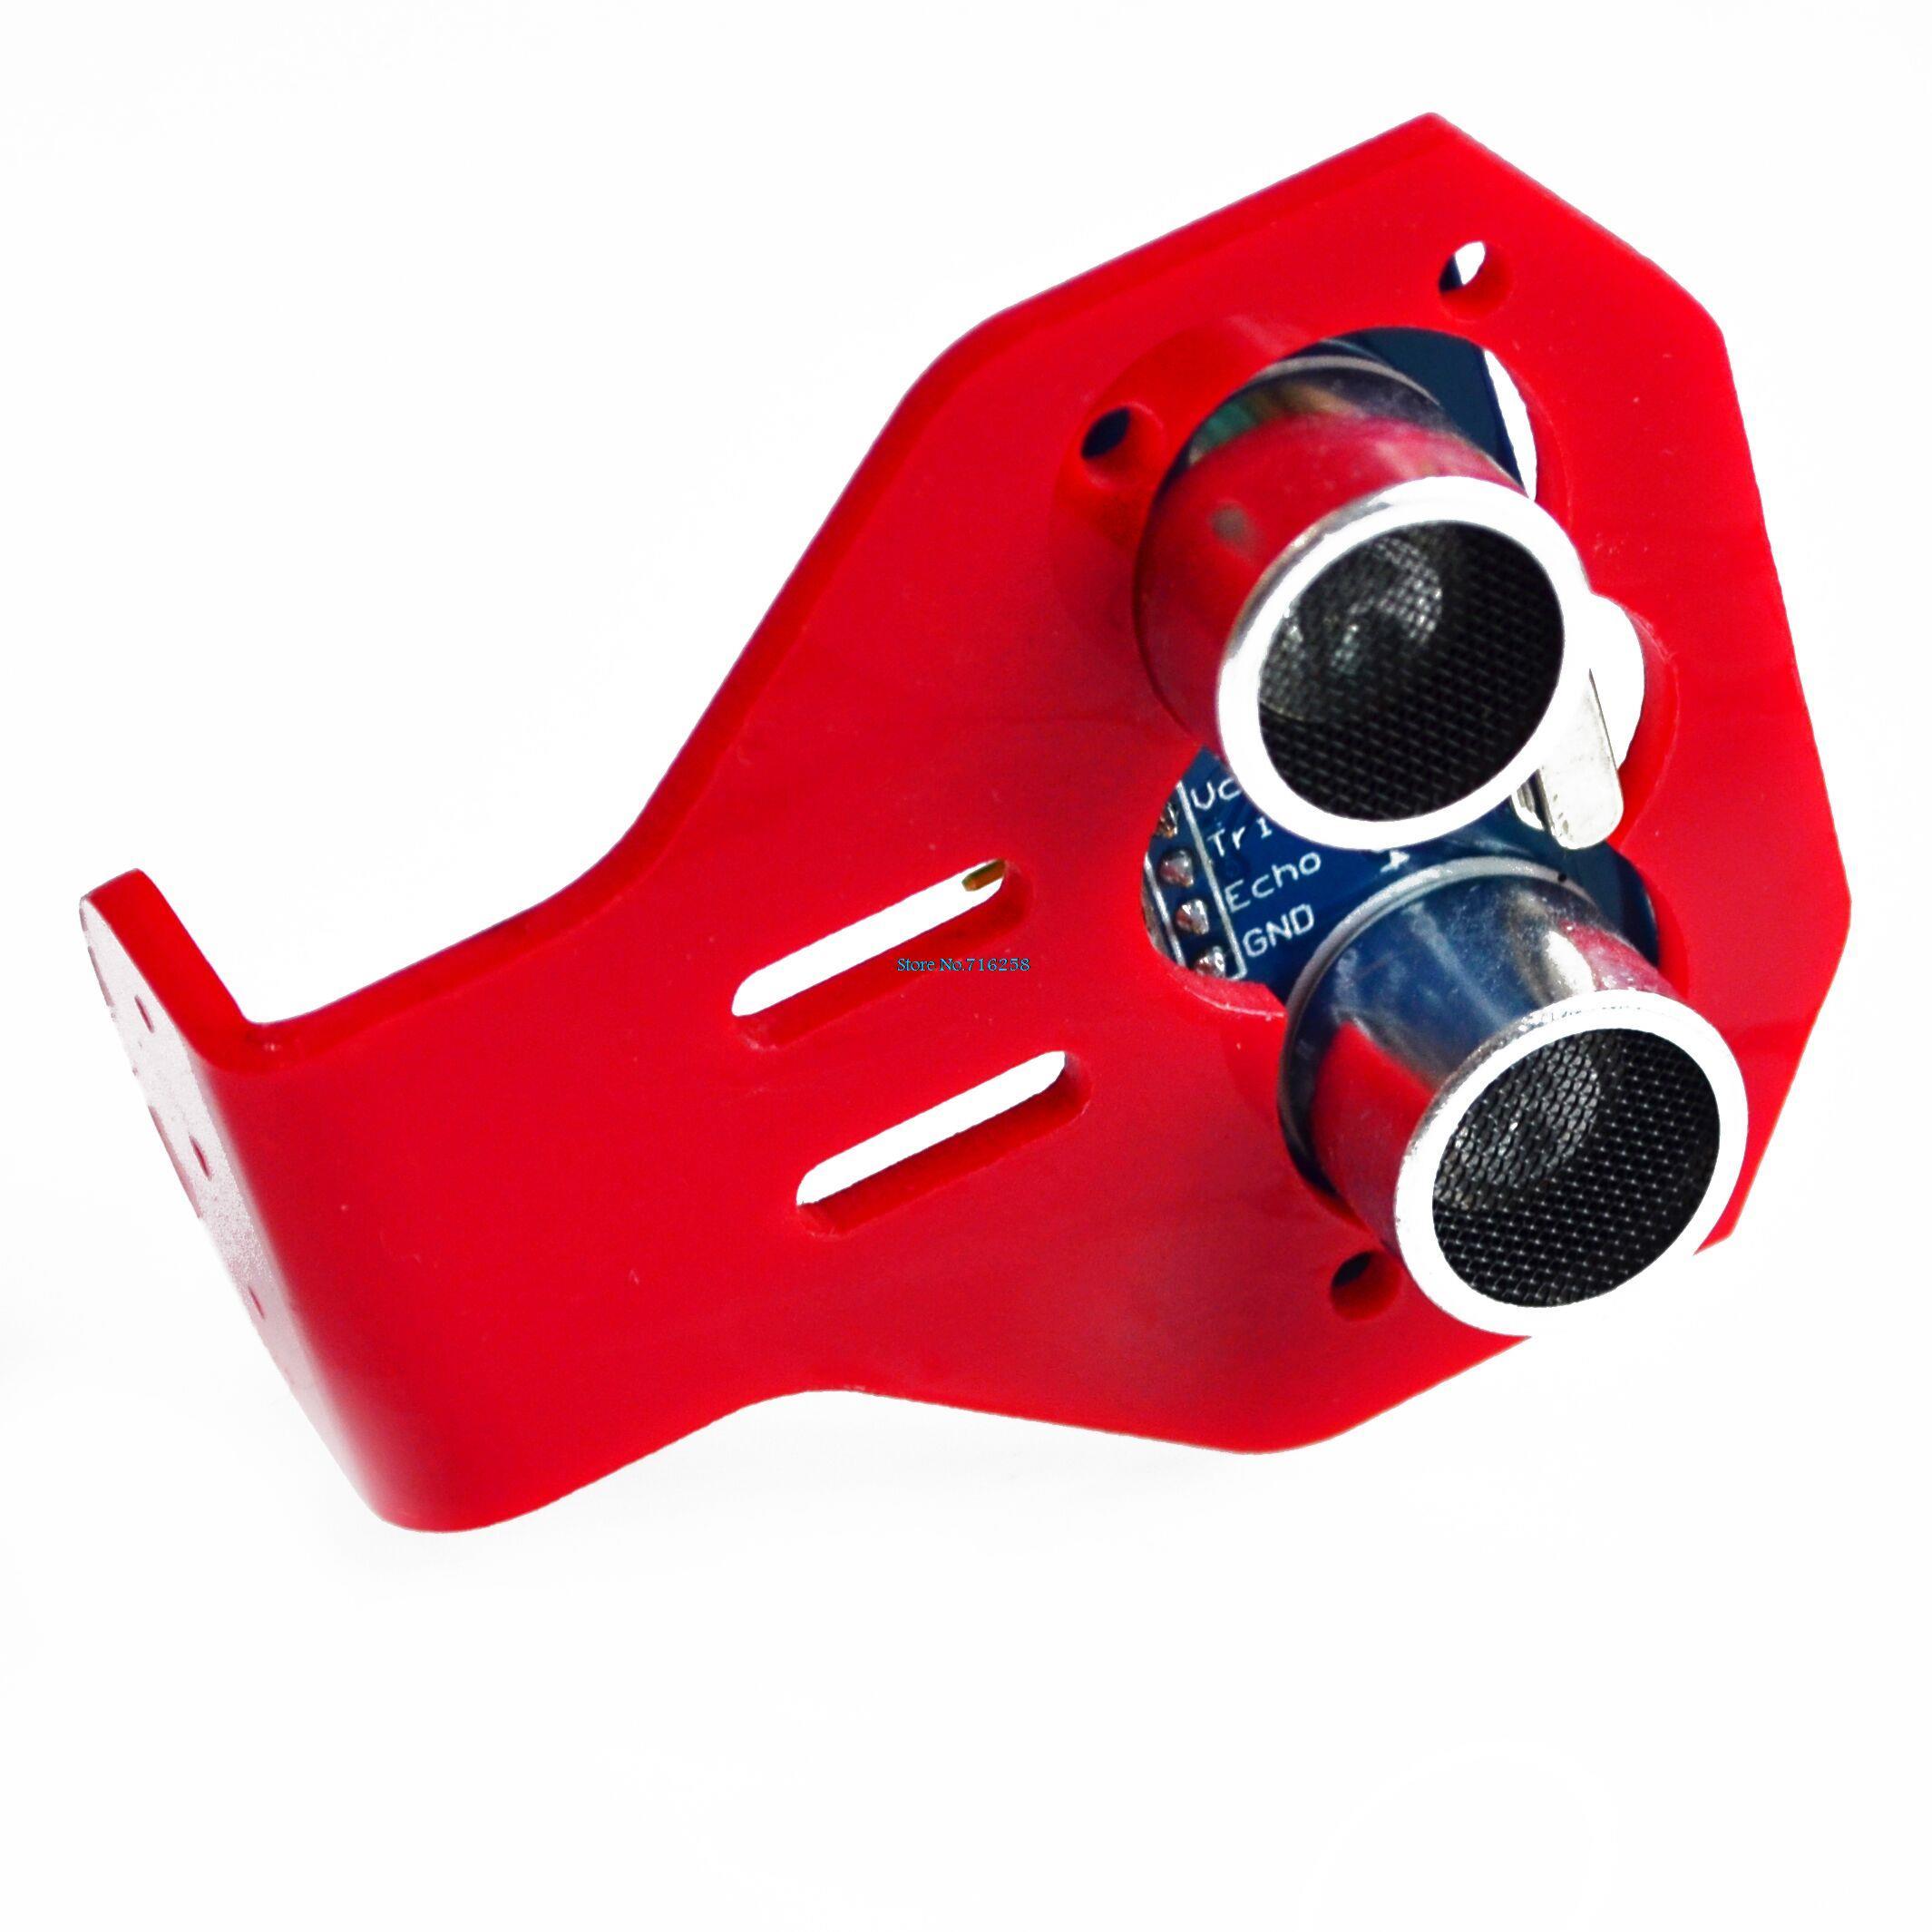 1lot-10pcs-5pcs-HC-SR04-Ultrasonic-Sensor-5pcsCartoon-Ultrasonic-Sensor-Mounting-Bracket-for-Smart-Car-Red-Blue-Color